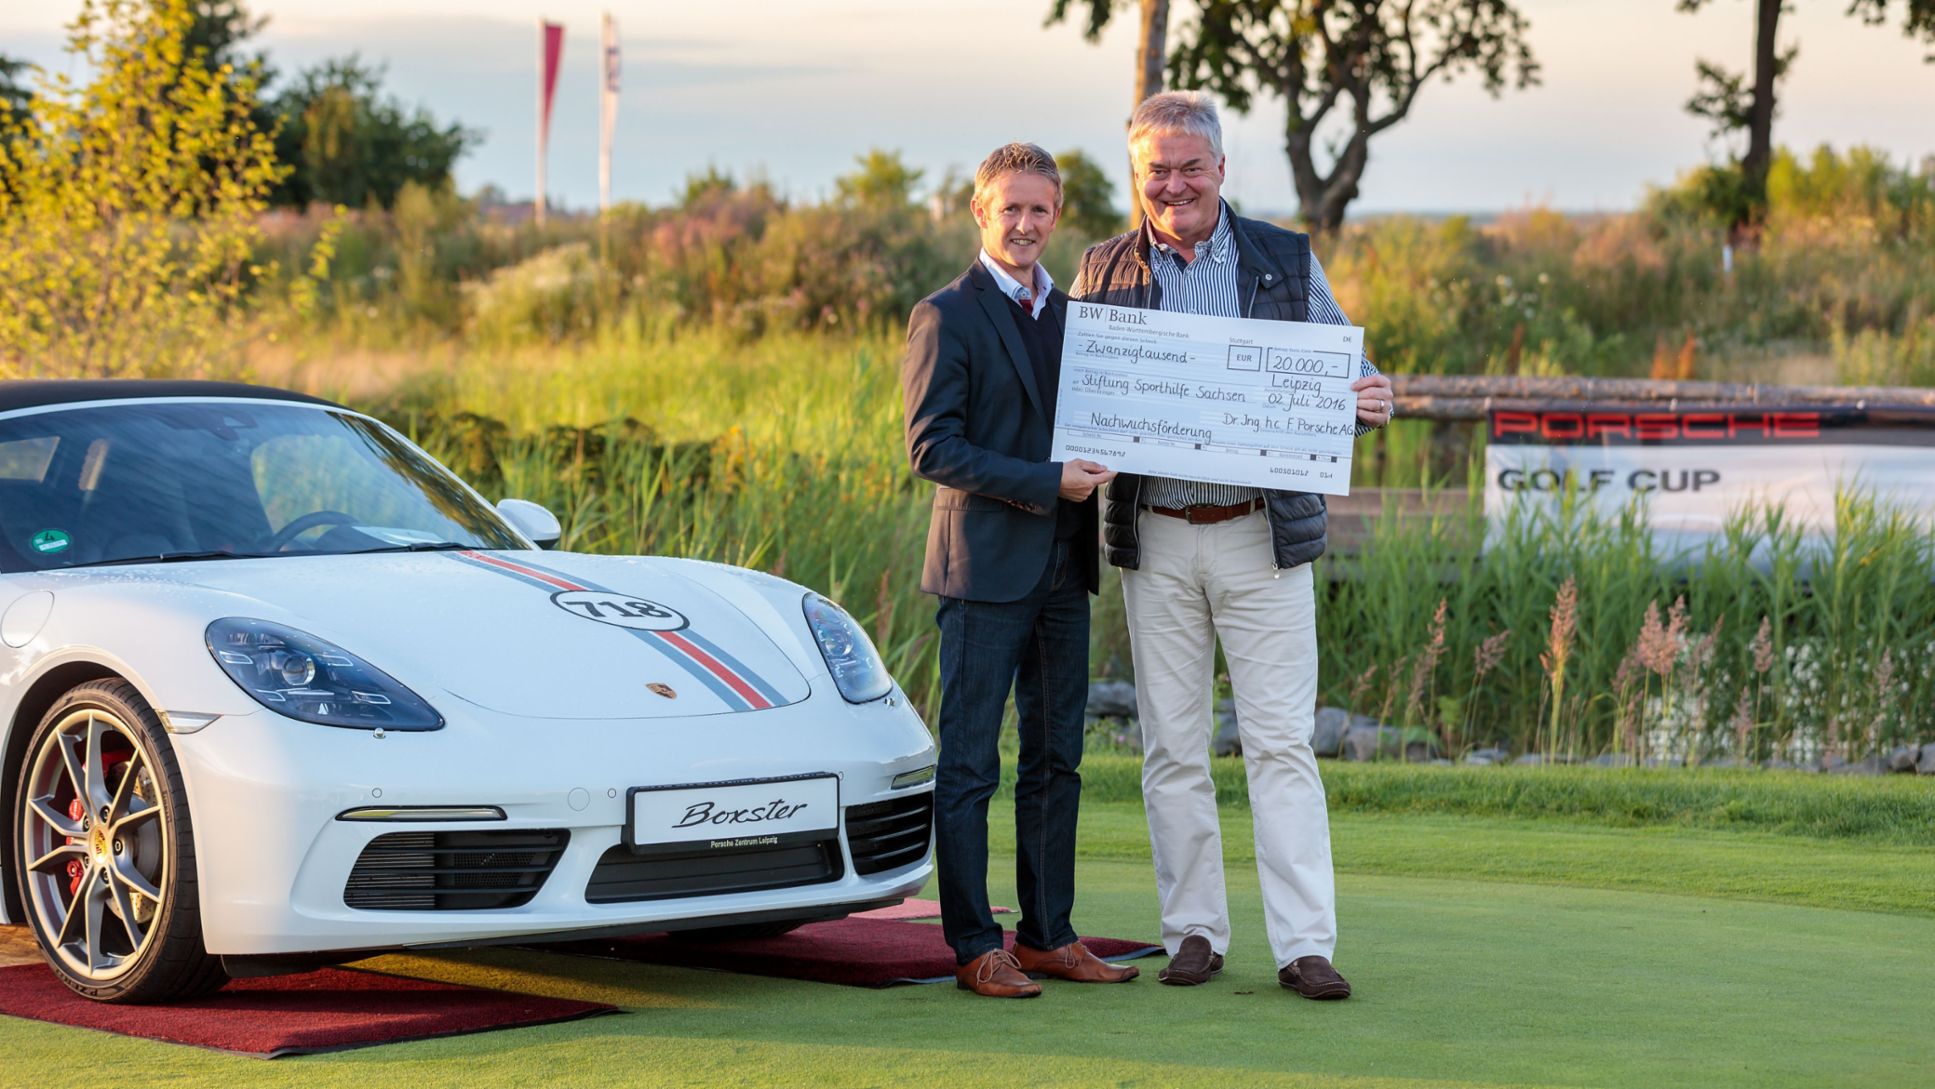 Scheckübergabe an die Stiftung Sporthilfe Sachsen, Porsche Golf Cup Leipzig, 2016, Porsche AG